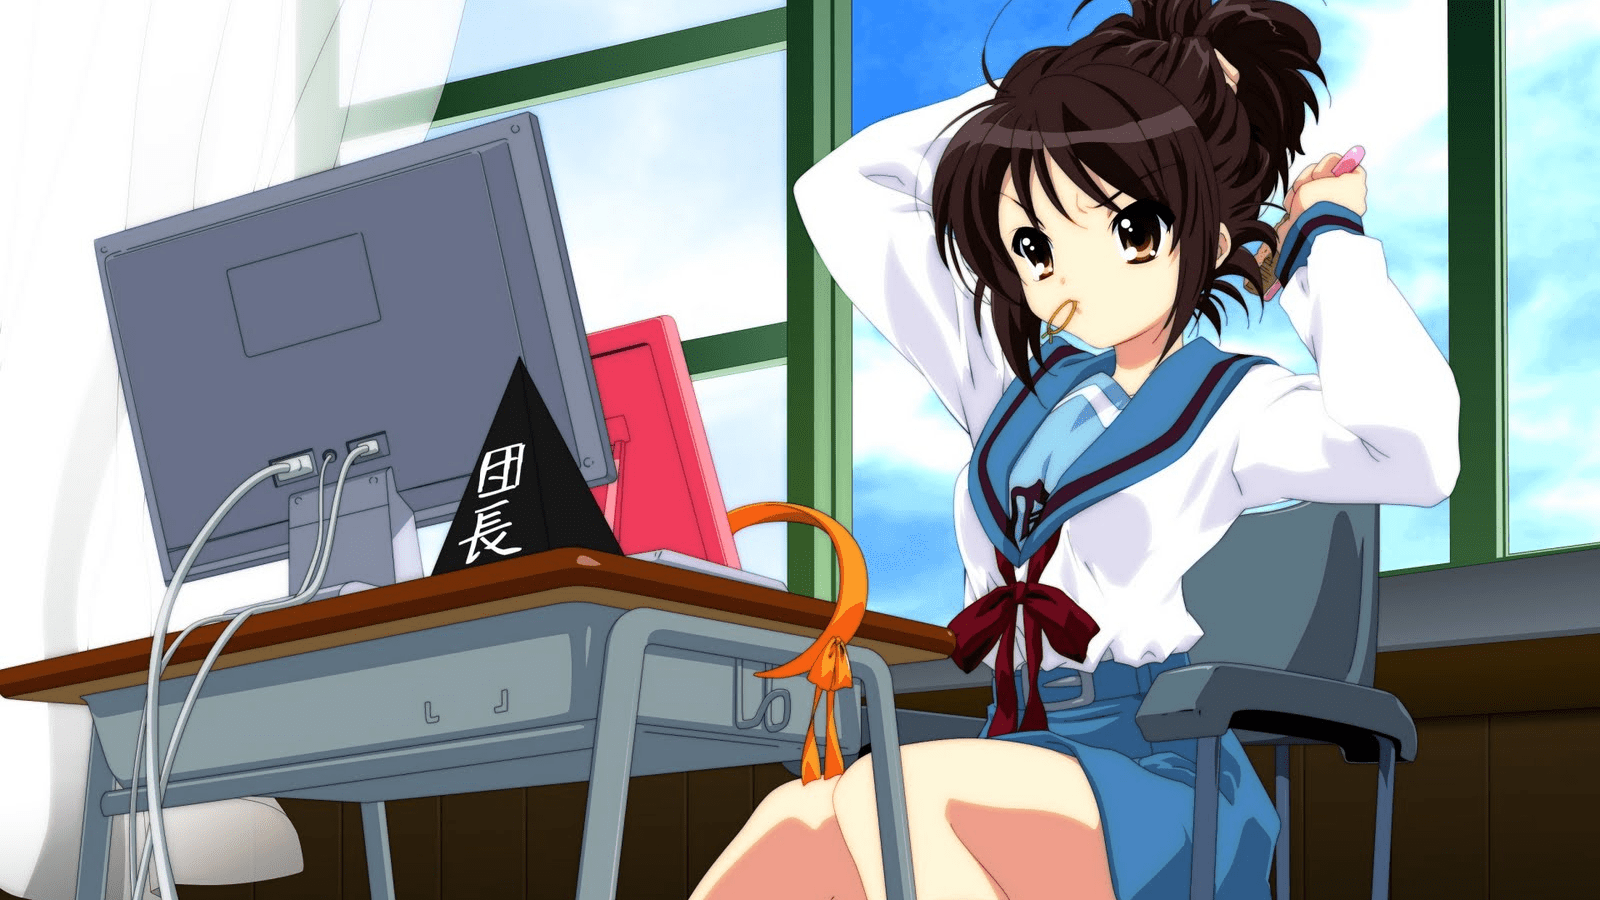 Haruhi Suzumiya at her computer.